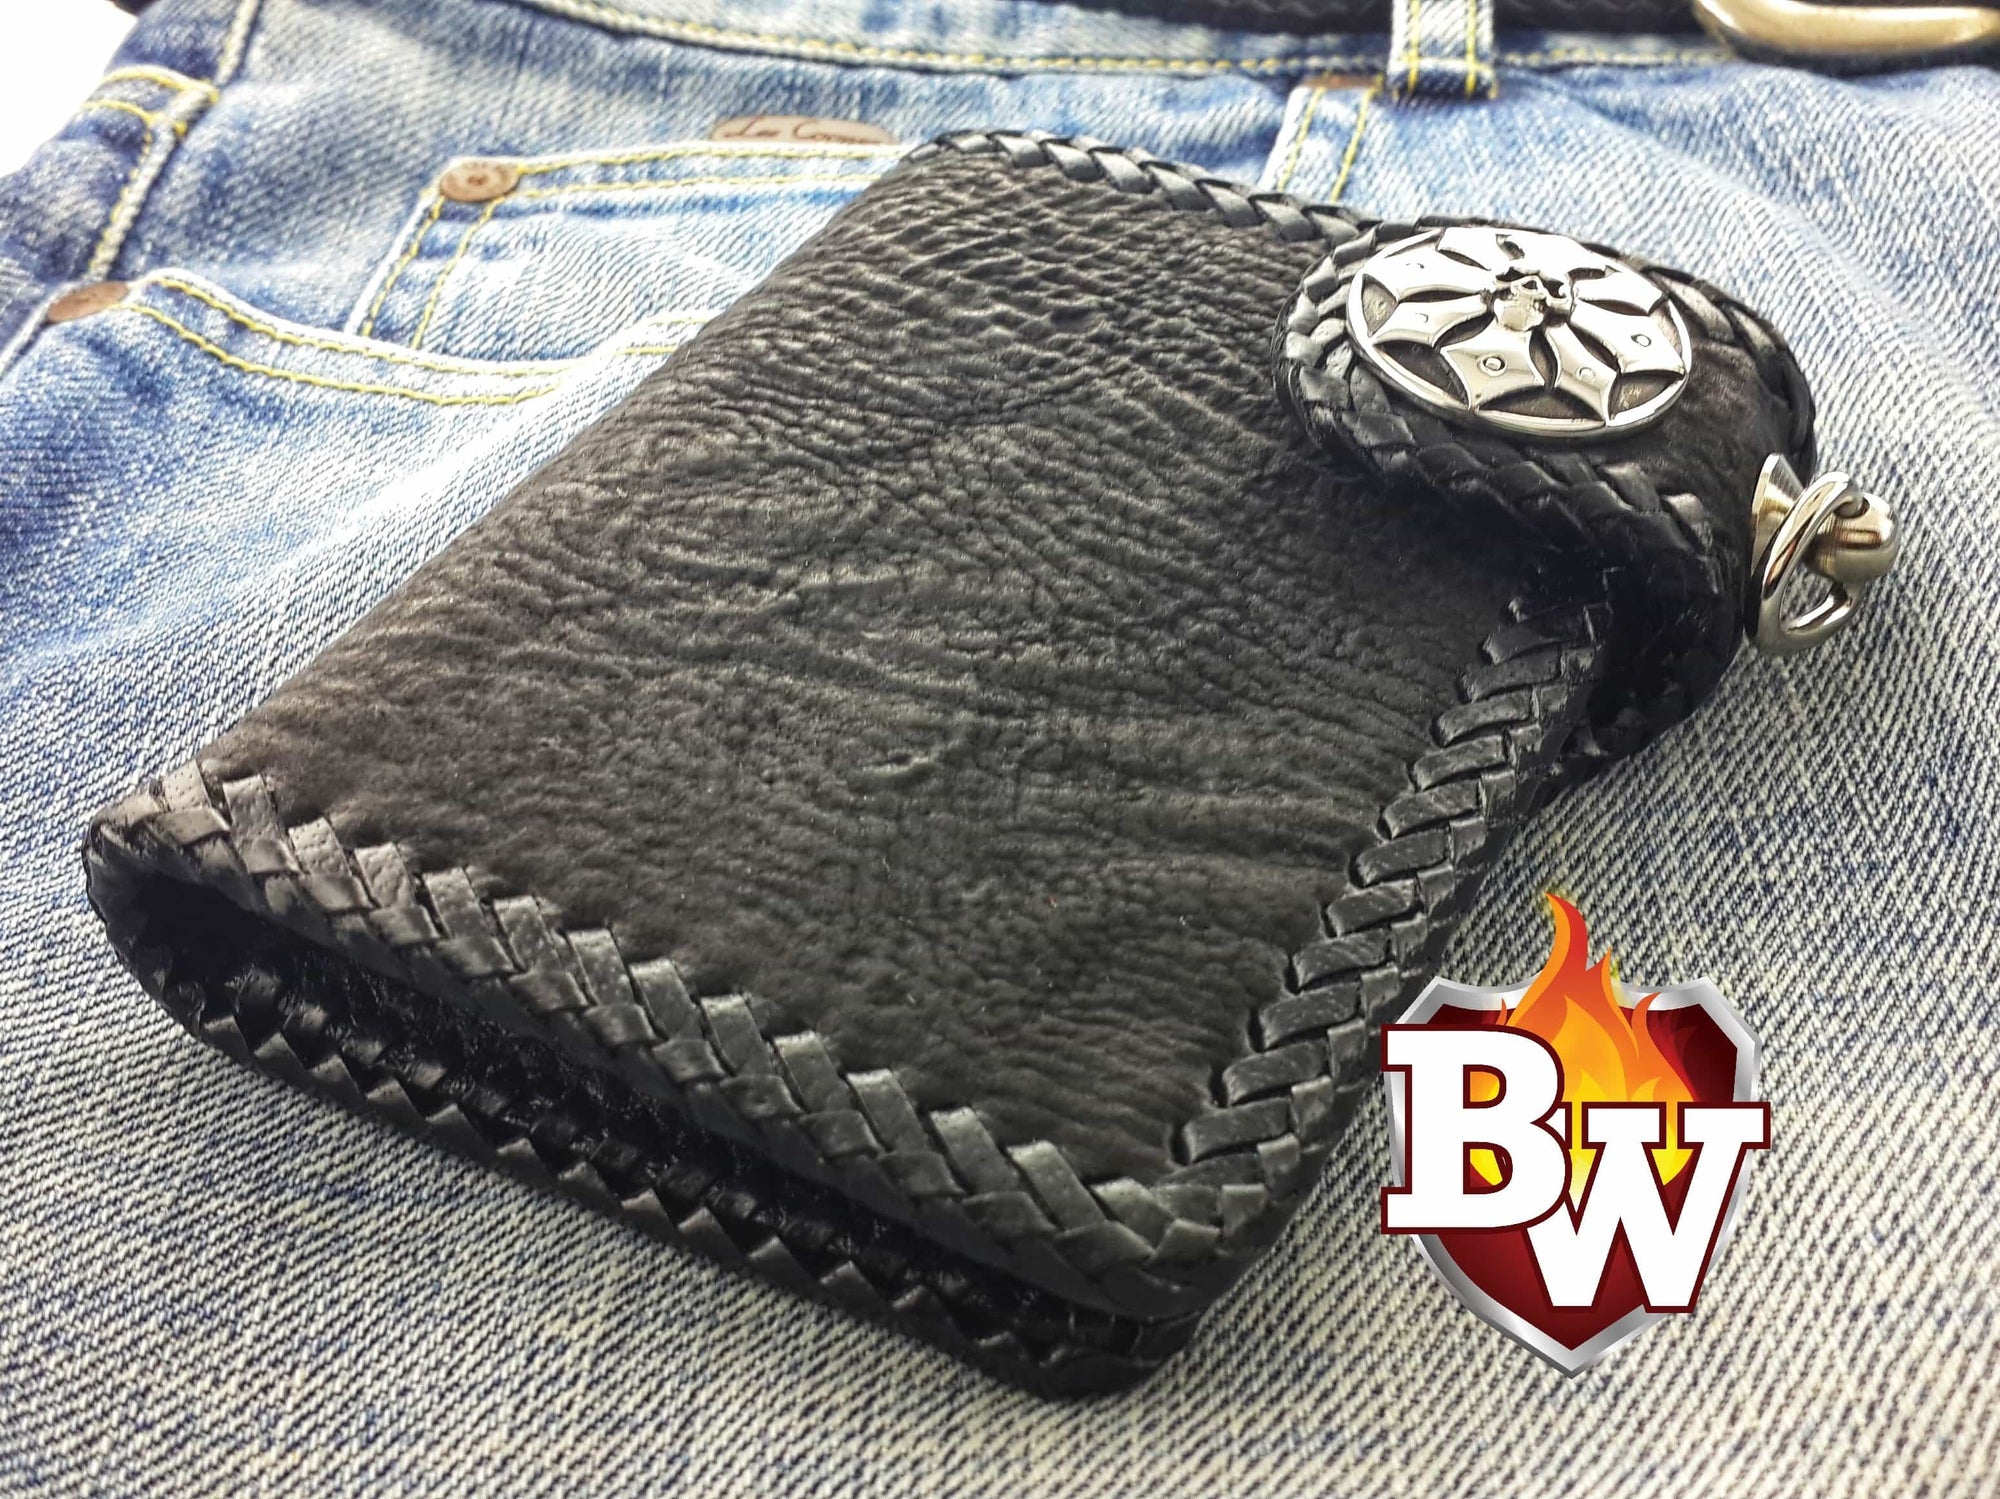 Outlaw 5-inch Custom Handmade Shark and Leather Men's Biker Wallet ...